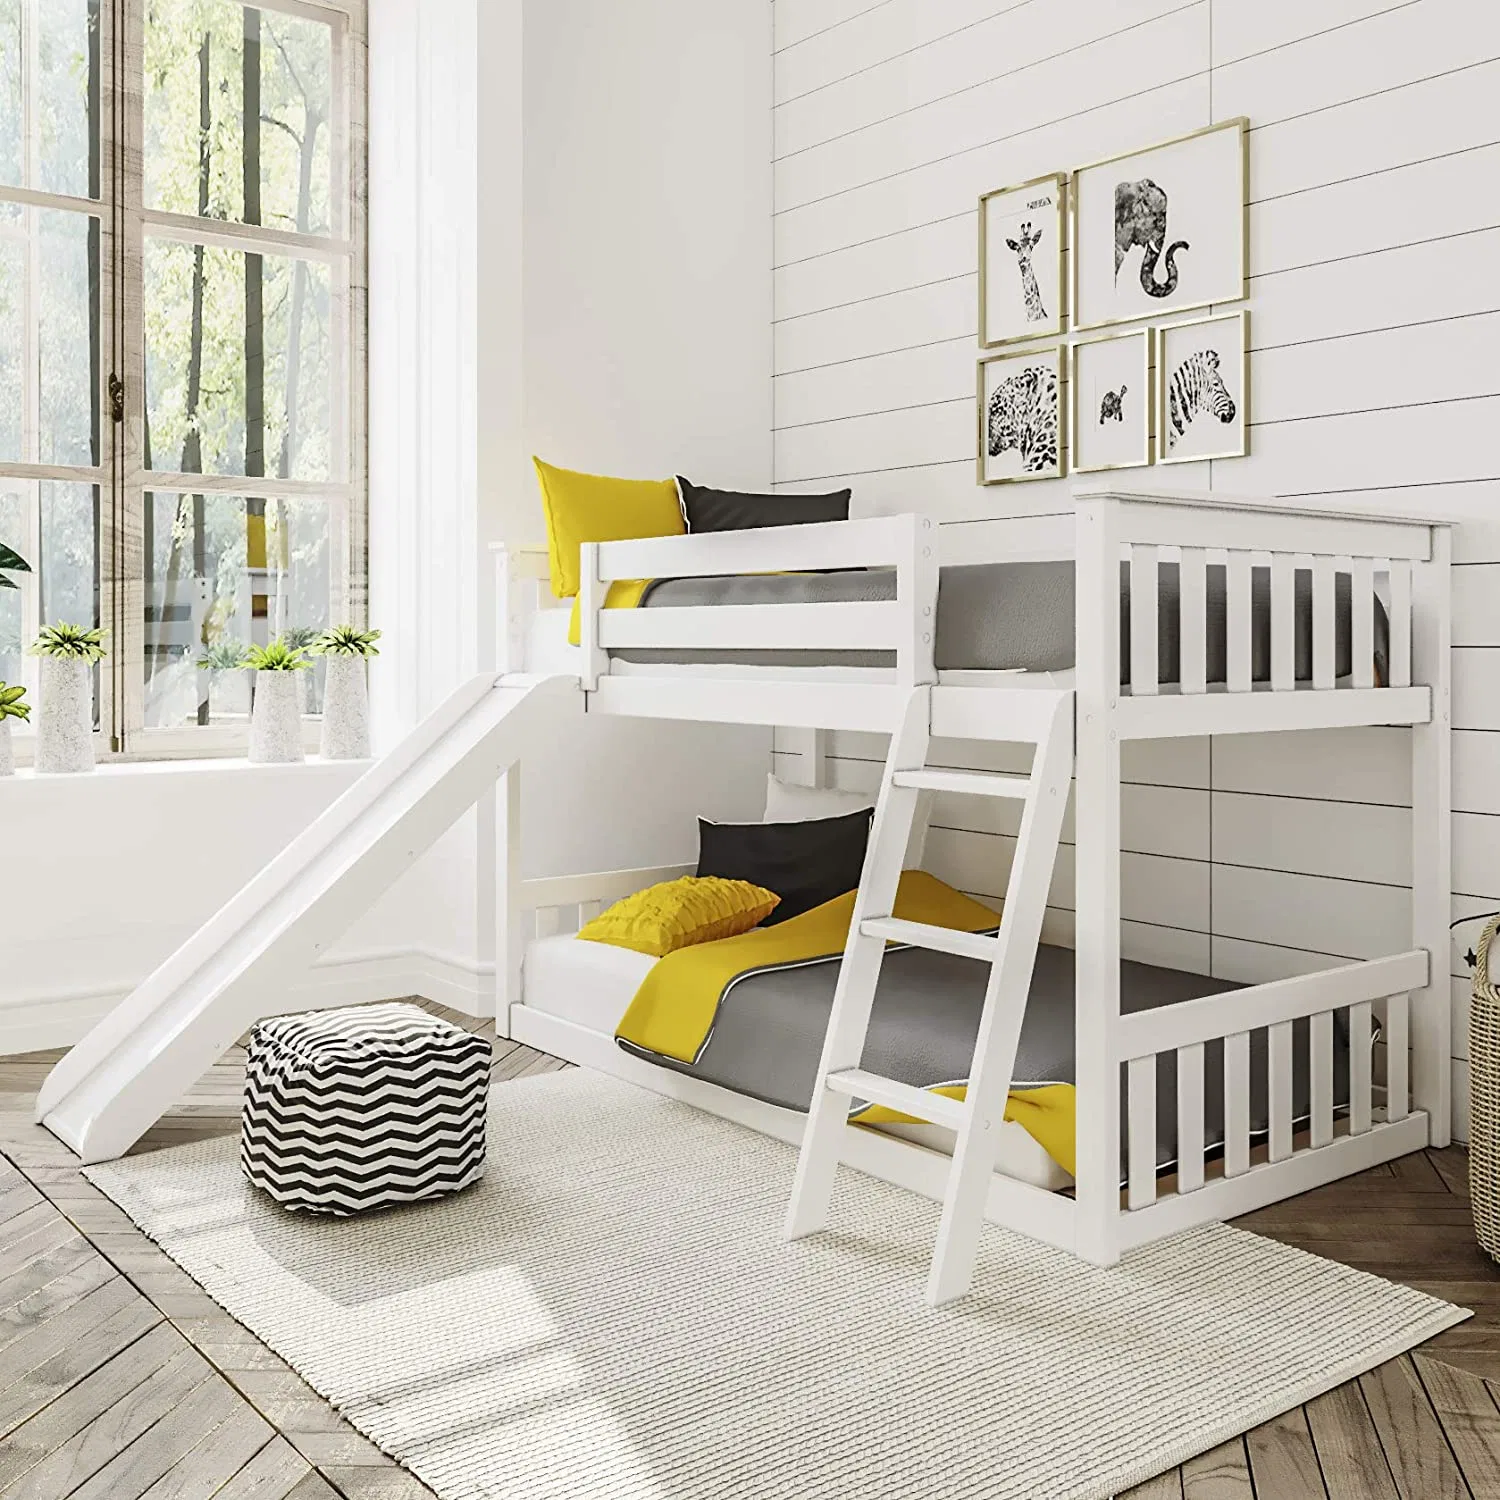 Bunk Bed with Slide Pine Wooden Finished Bed with Ladder/Furniture Bed/Children Wooden Bed/Bedroom Set/Bed Frame